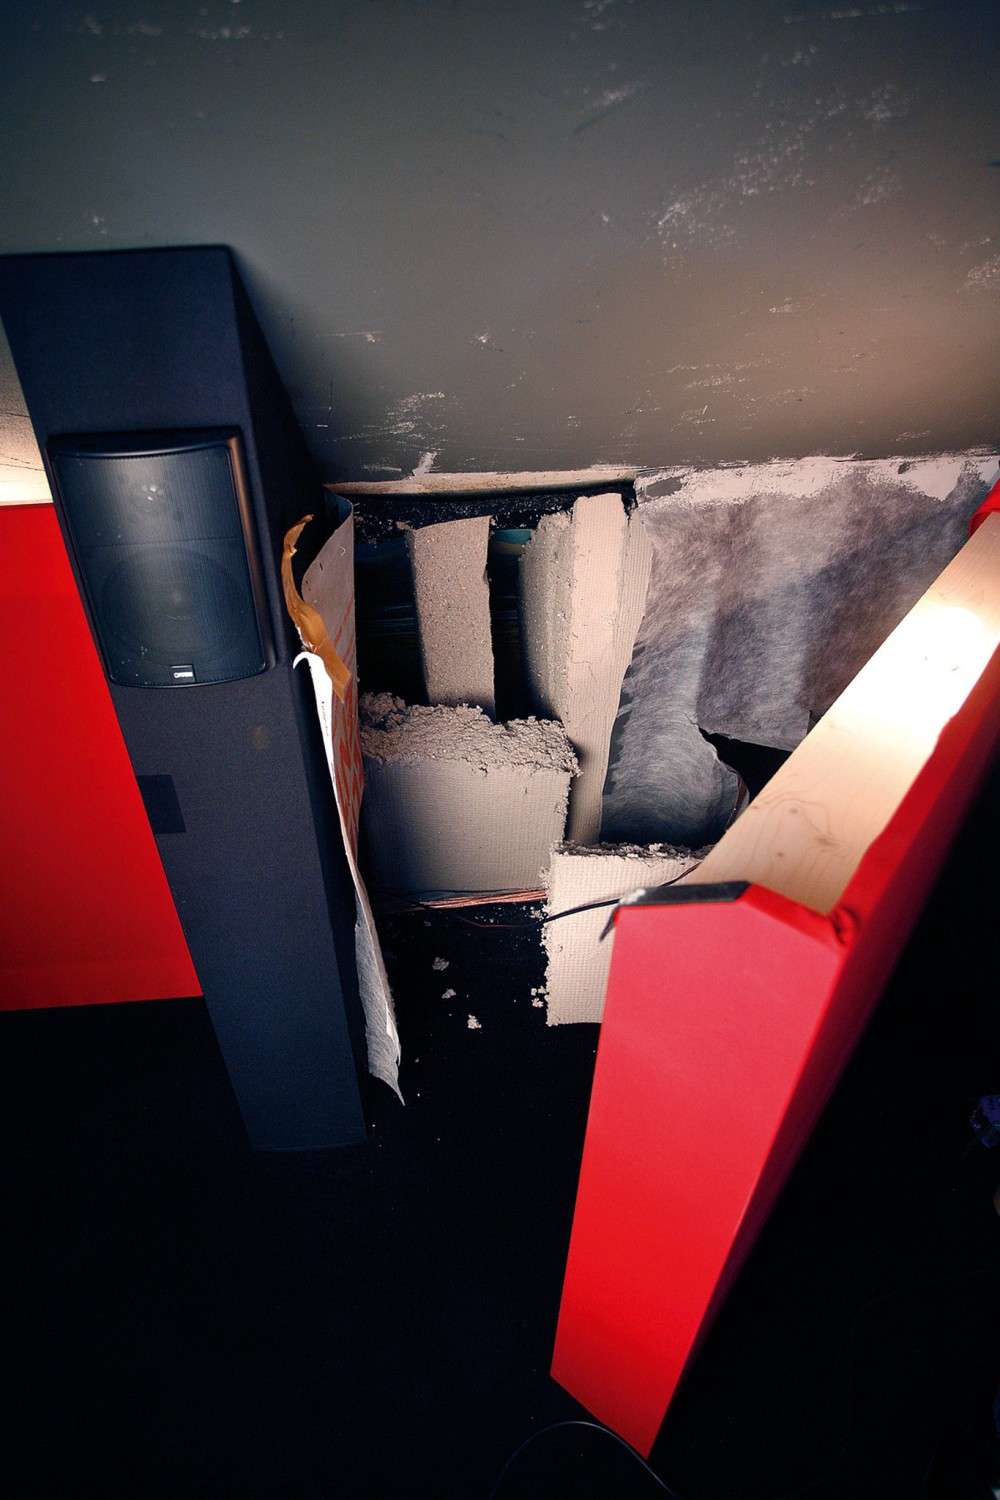 Ratgeber LESERKINO (12) Nice Surprise: 3D-Dachbodenkino mit Suchtfaktor, ein Klanghammer - News, Bild 7